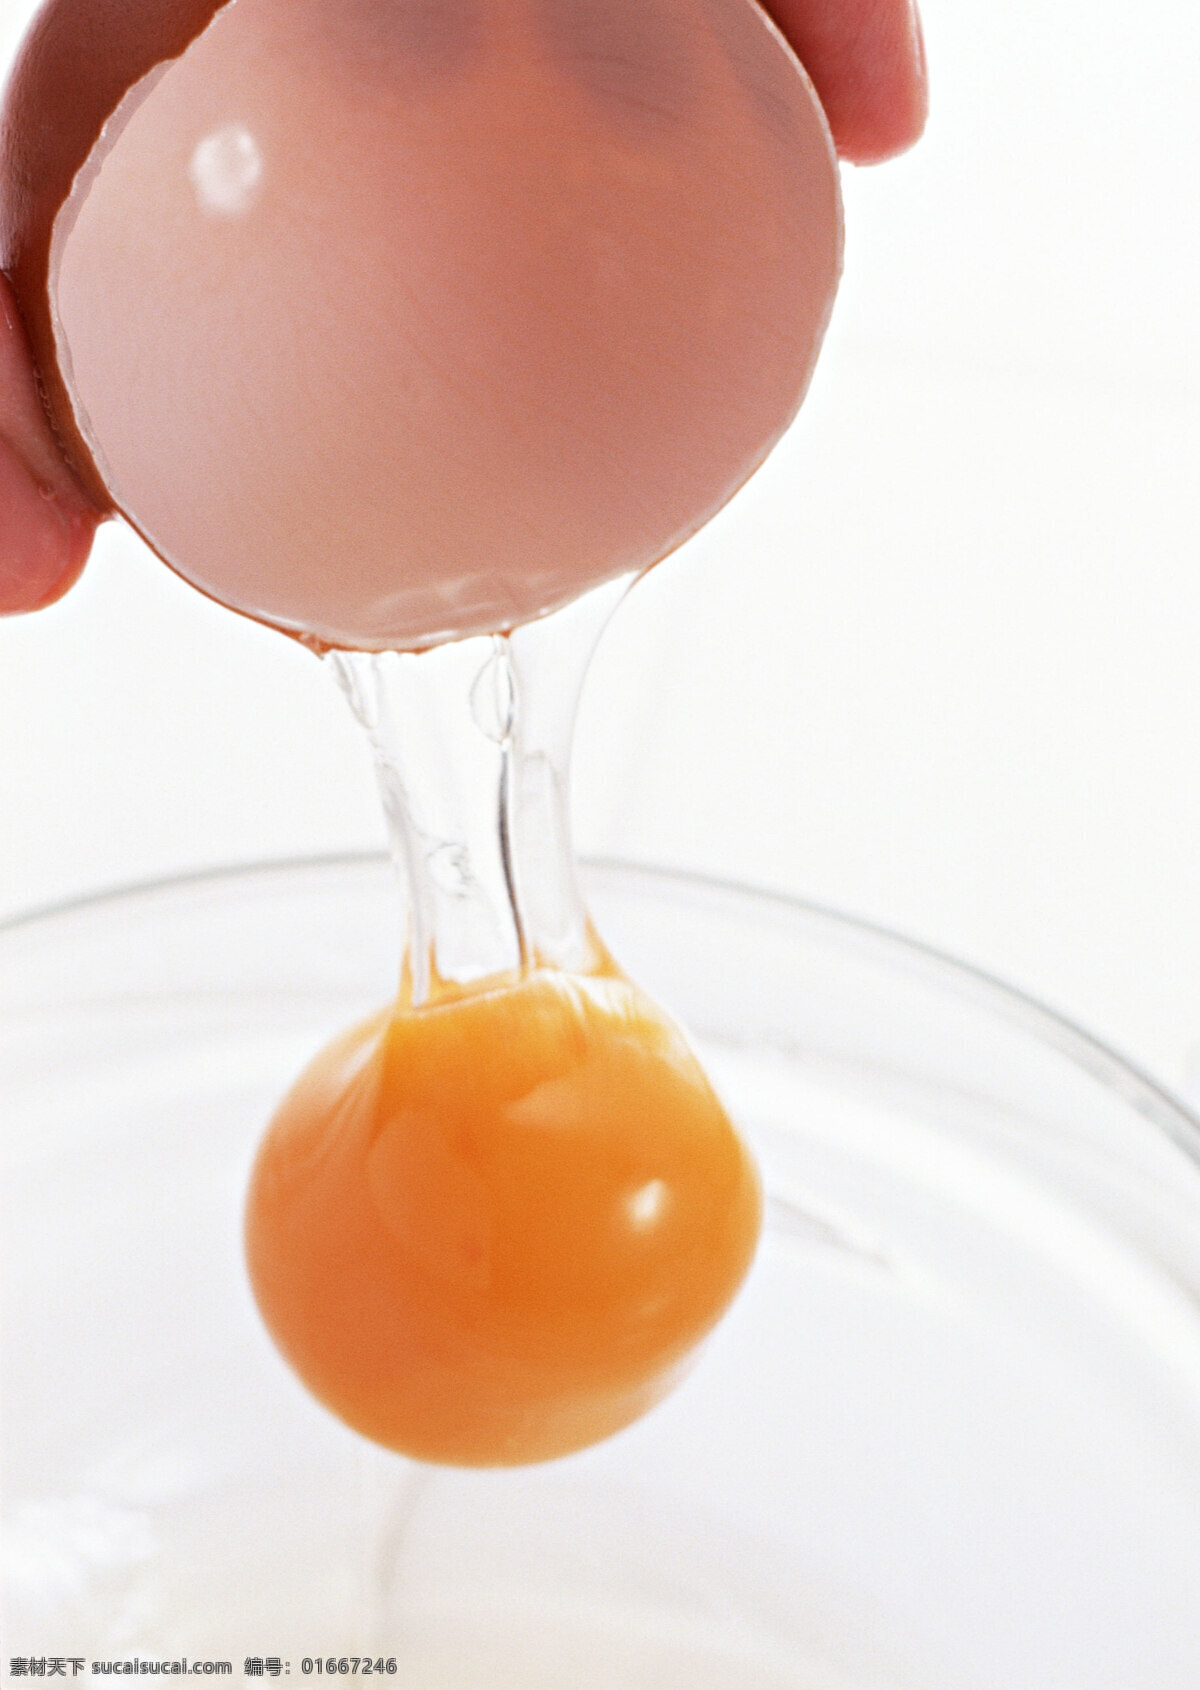 蛋壳 生的 破碎 蛋黄 有机 白色 新鲜 鸡蛋 鸭蛋 营养 蛋清 高清 餐饮美食 食物原料 传统美食